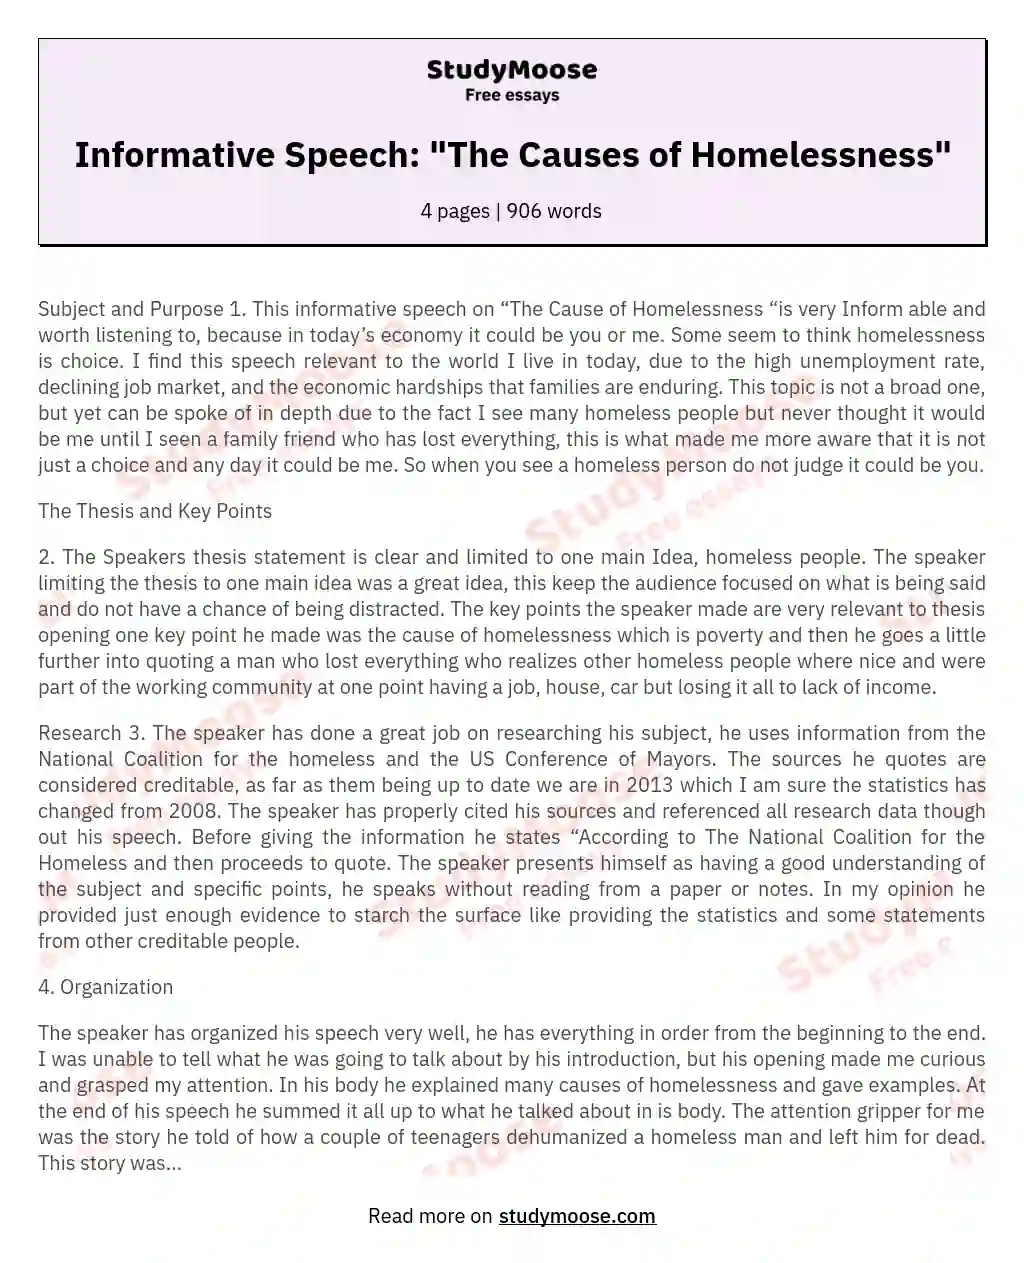 informative speech homelessness